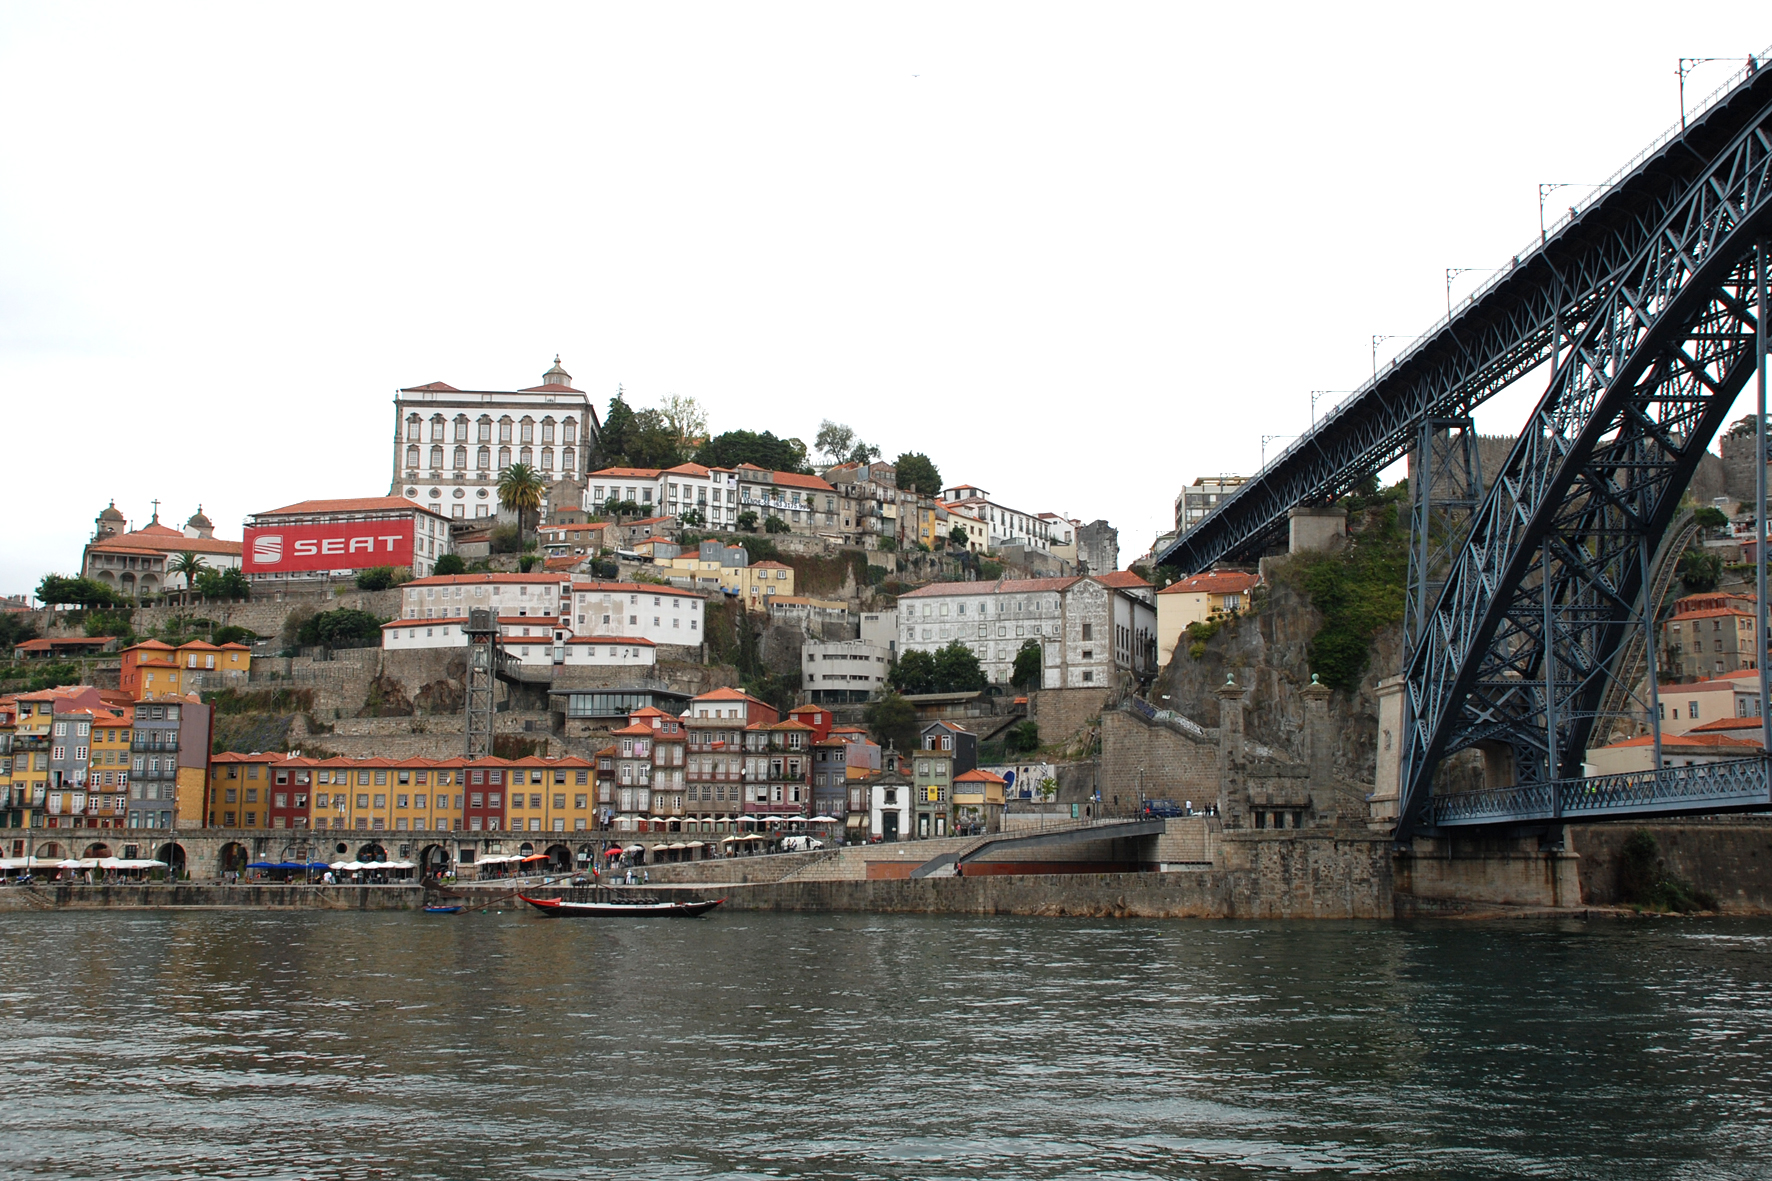 Фотография №1 - город Порту в Португалии